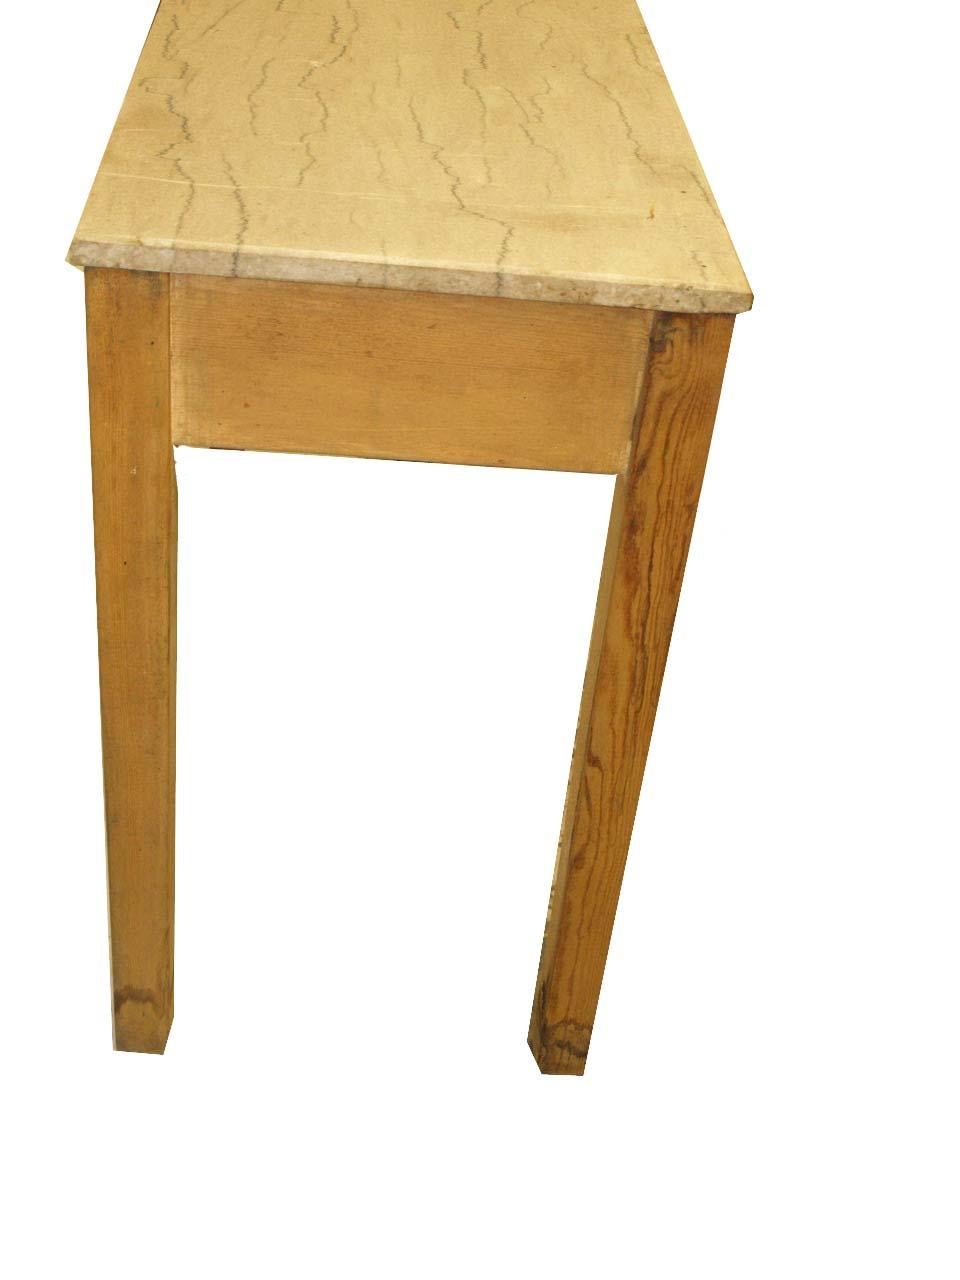 Englisch Kiefer Marmorplatte Konsole Tisch, mit schönen gemaserten Marmorplatte, die zwei Schubladen mit Schwanenhals zieht, gerade Beine.